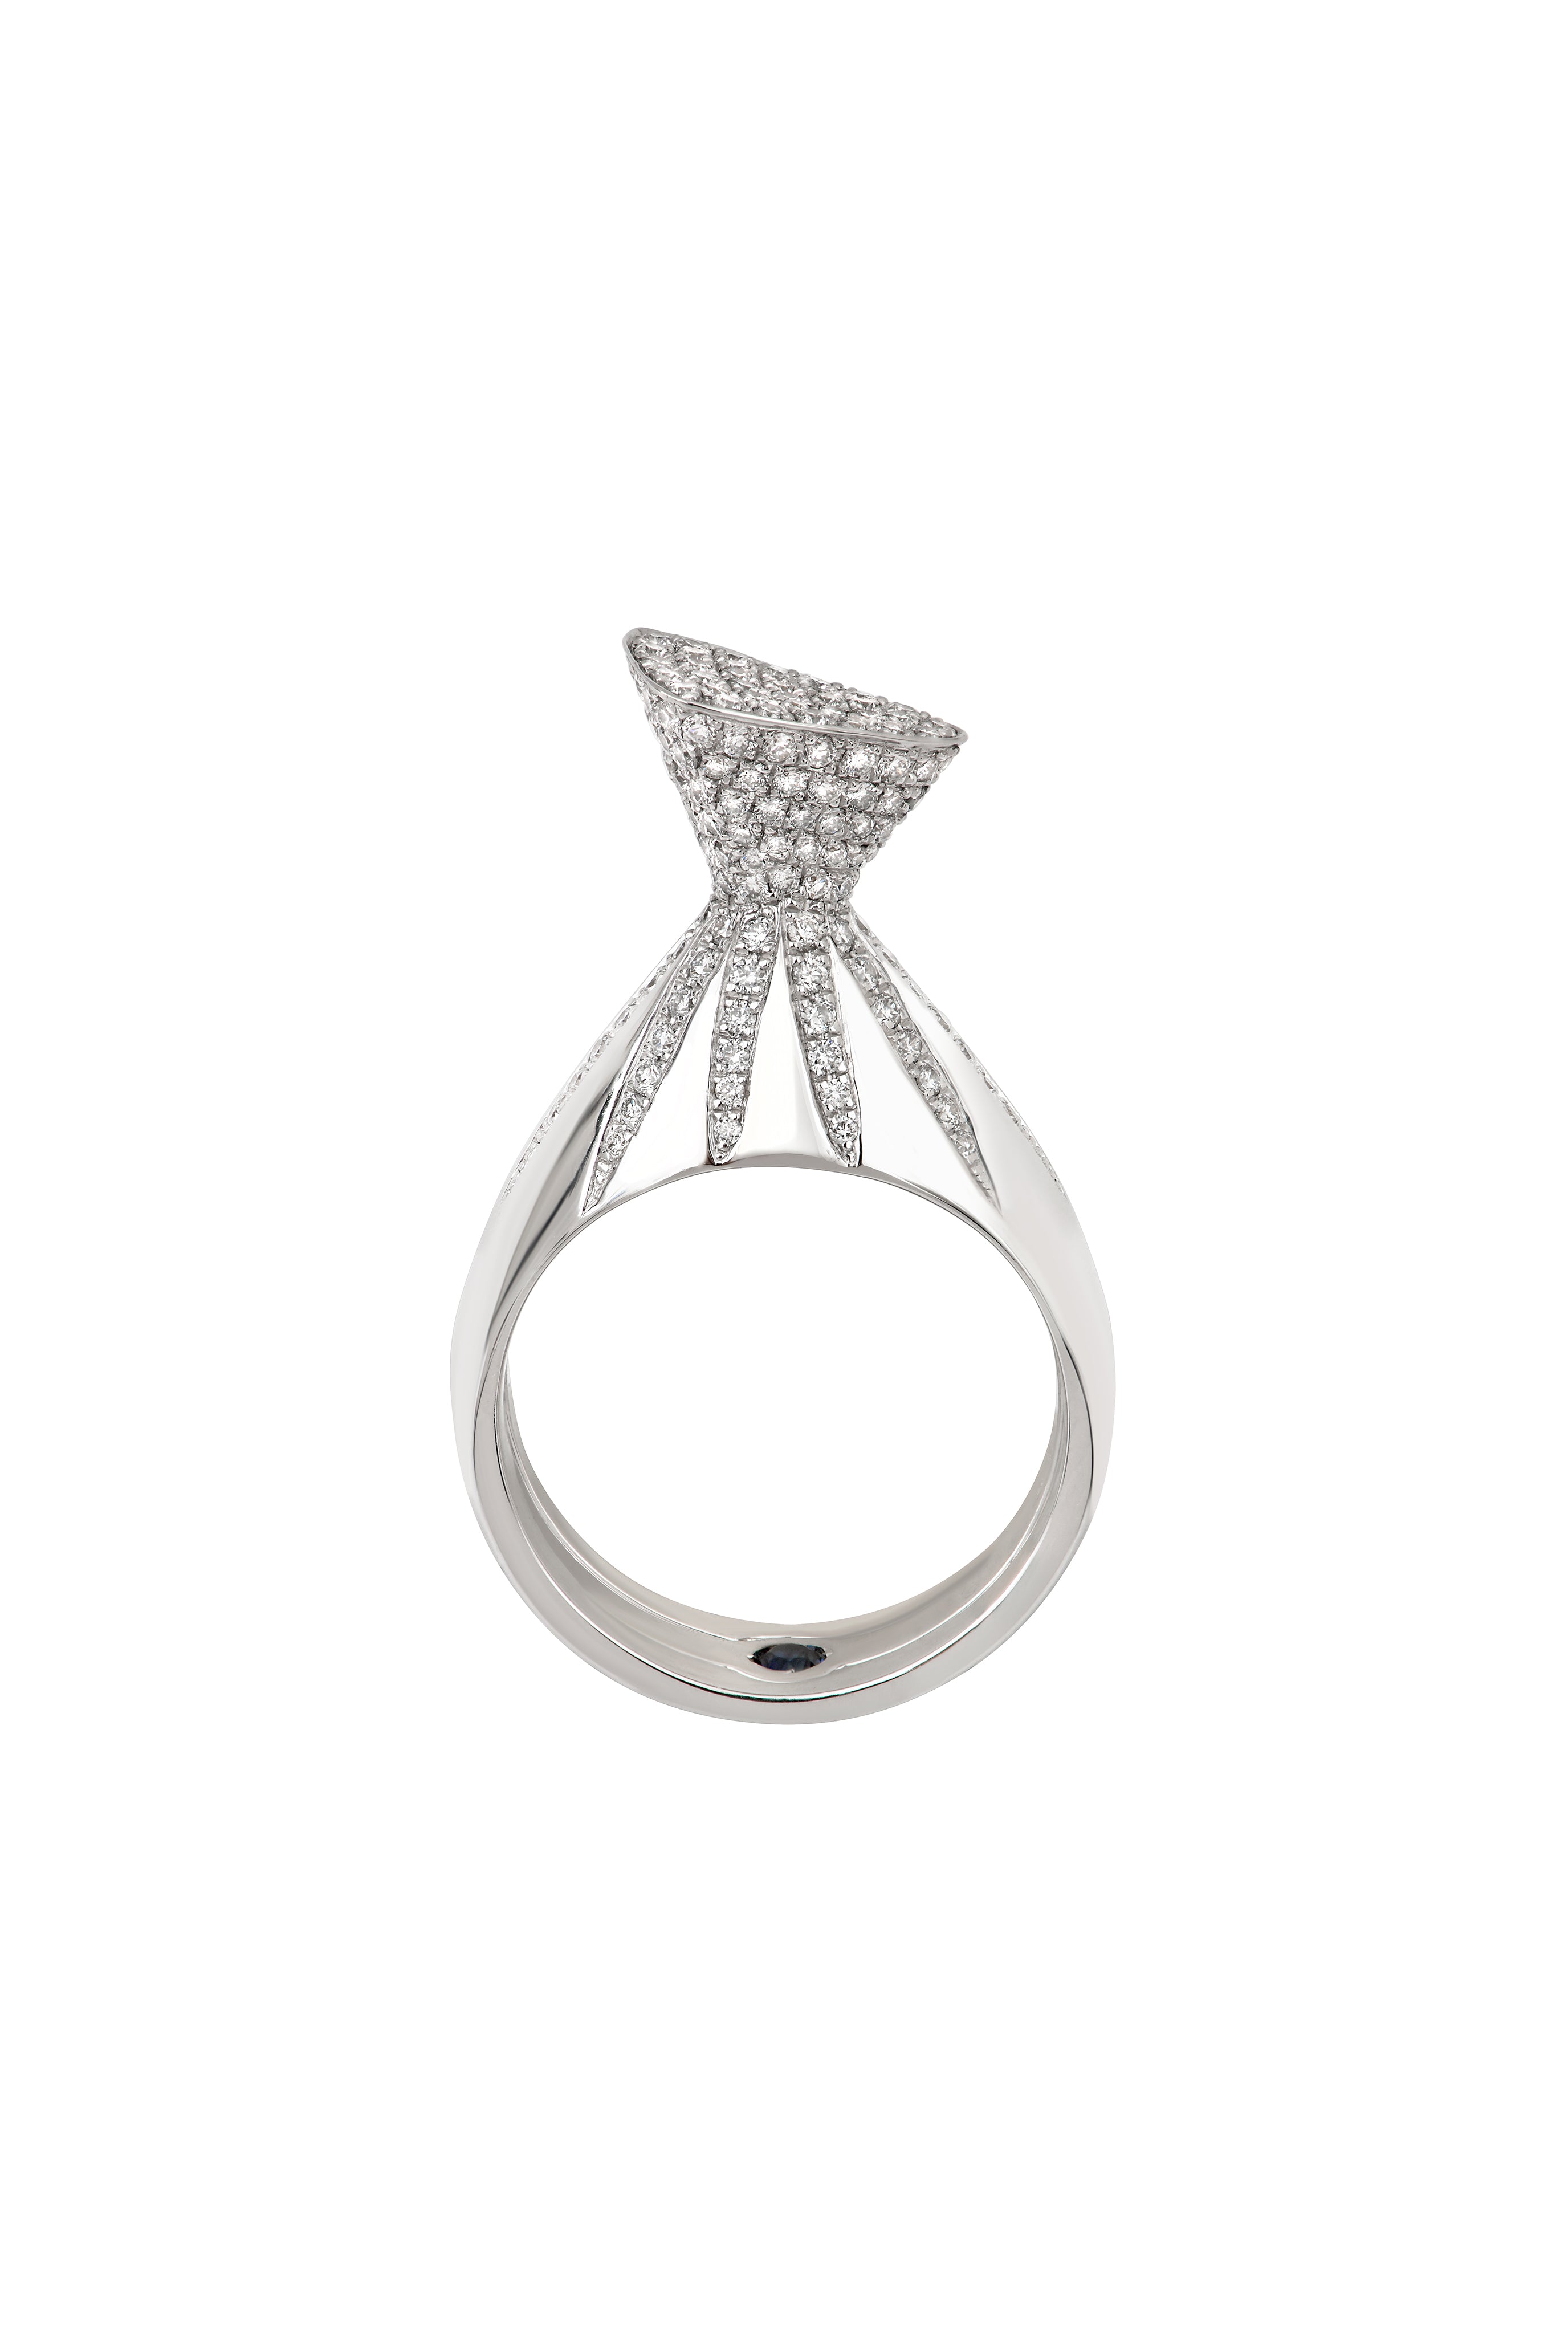 Banu Lucis diamond ring